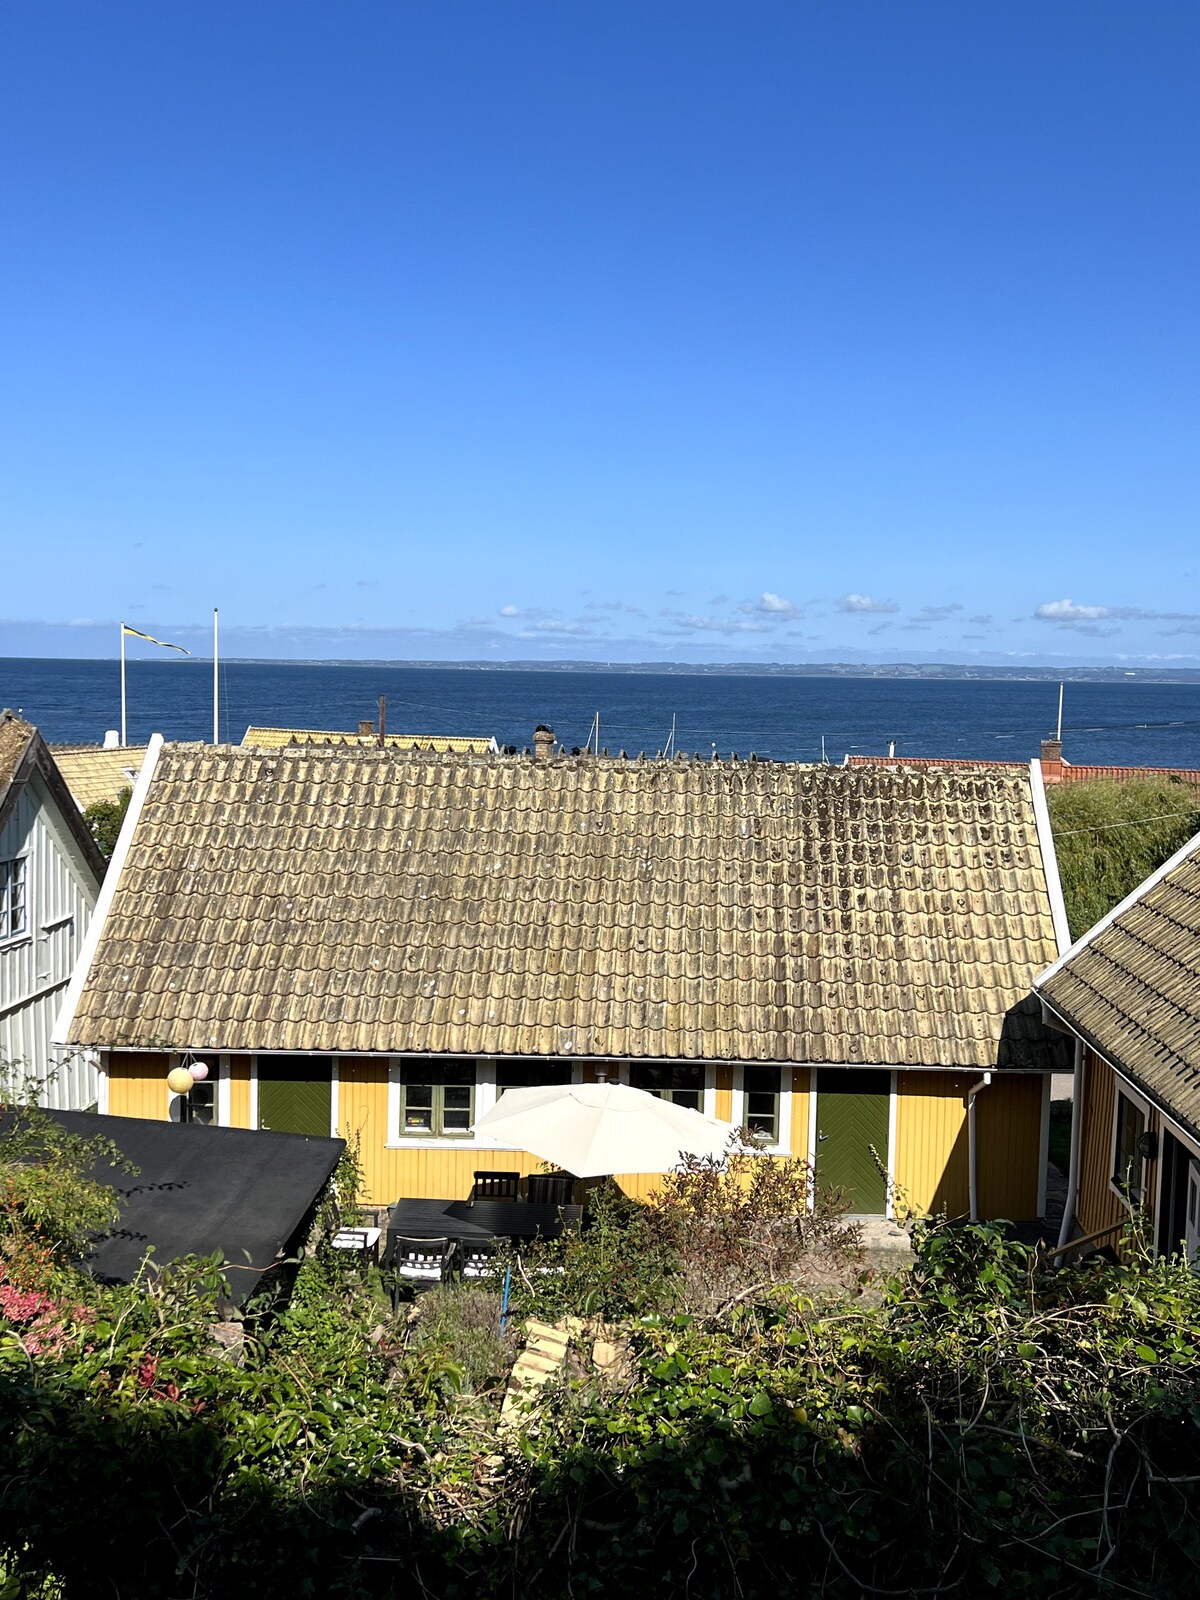 The Sea Captain's Cottage